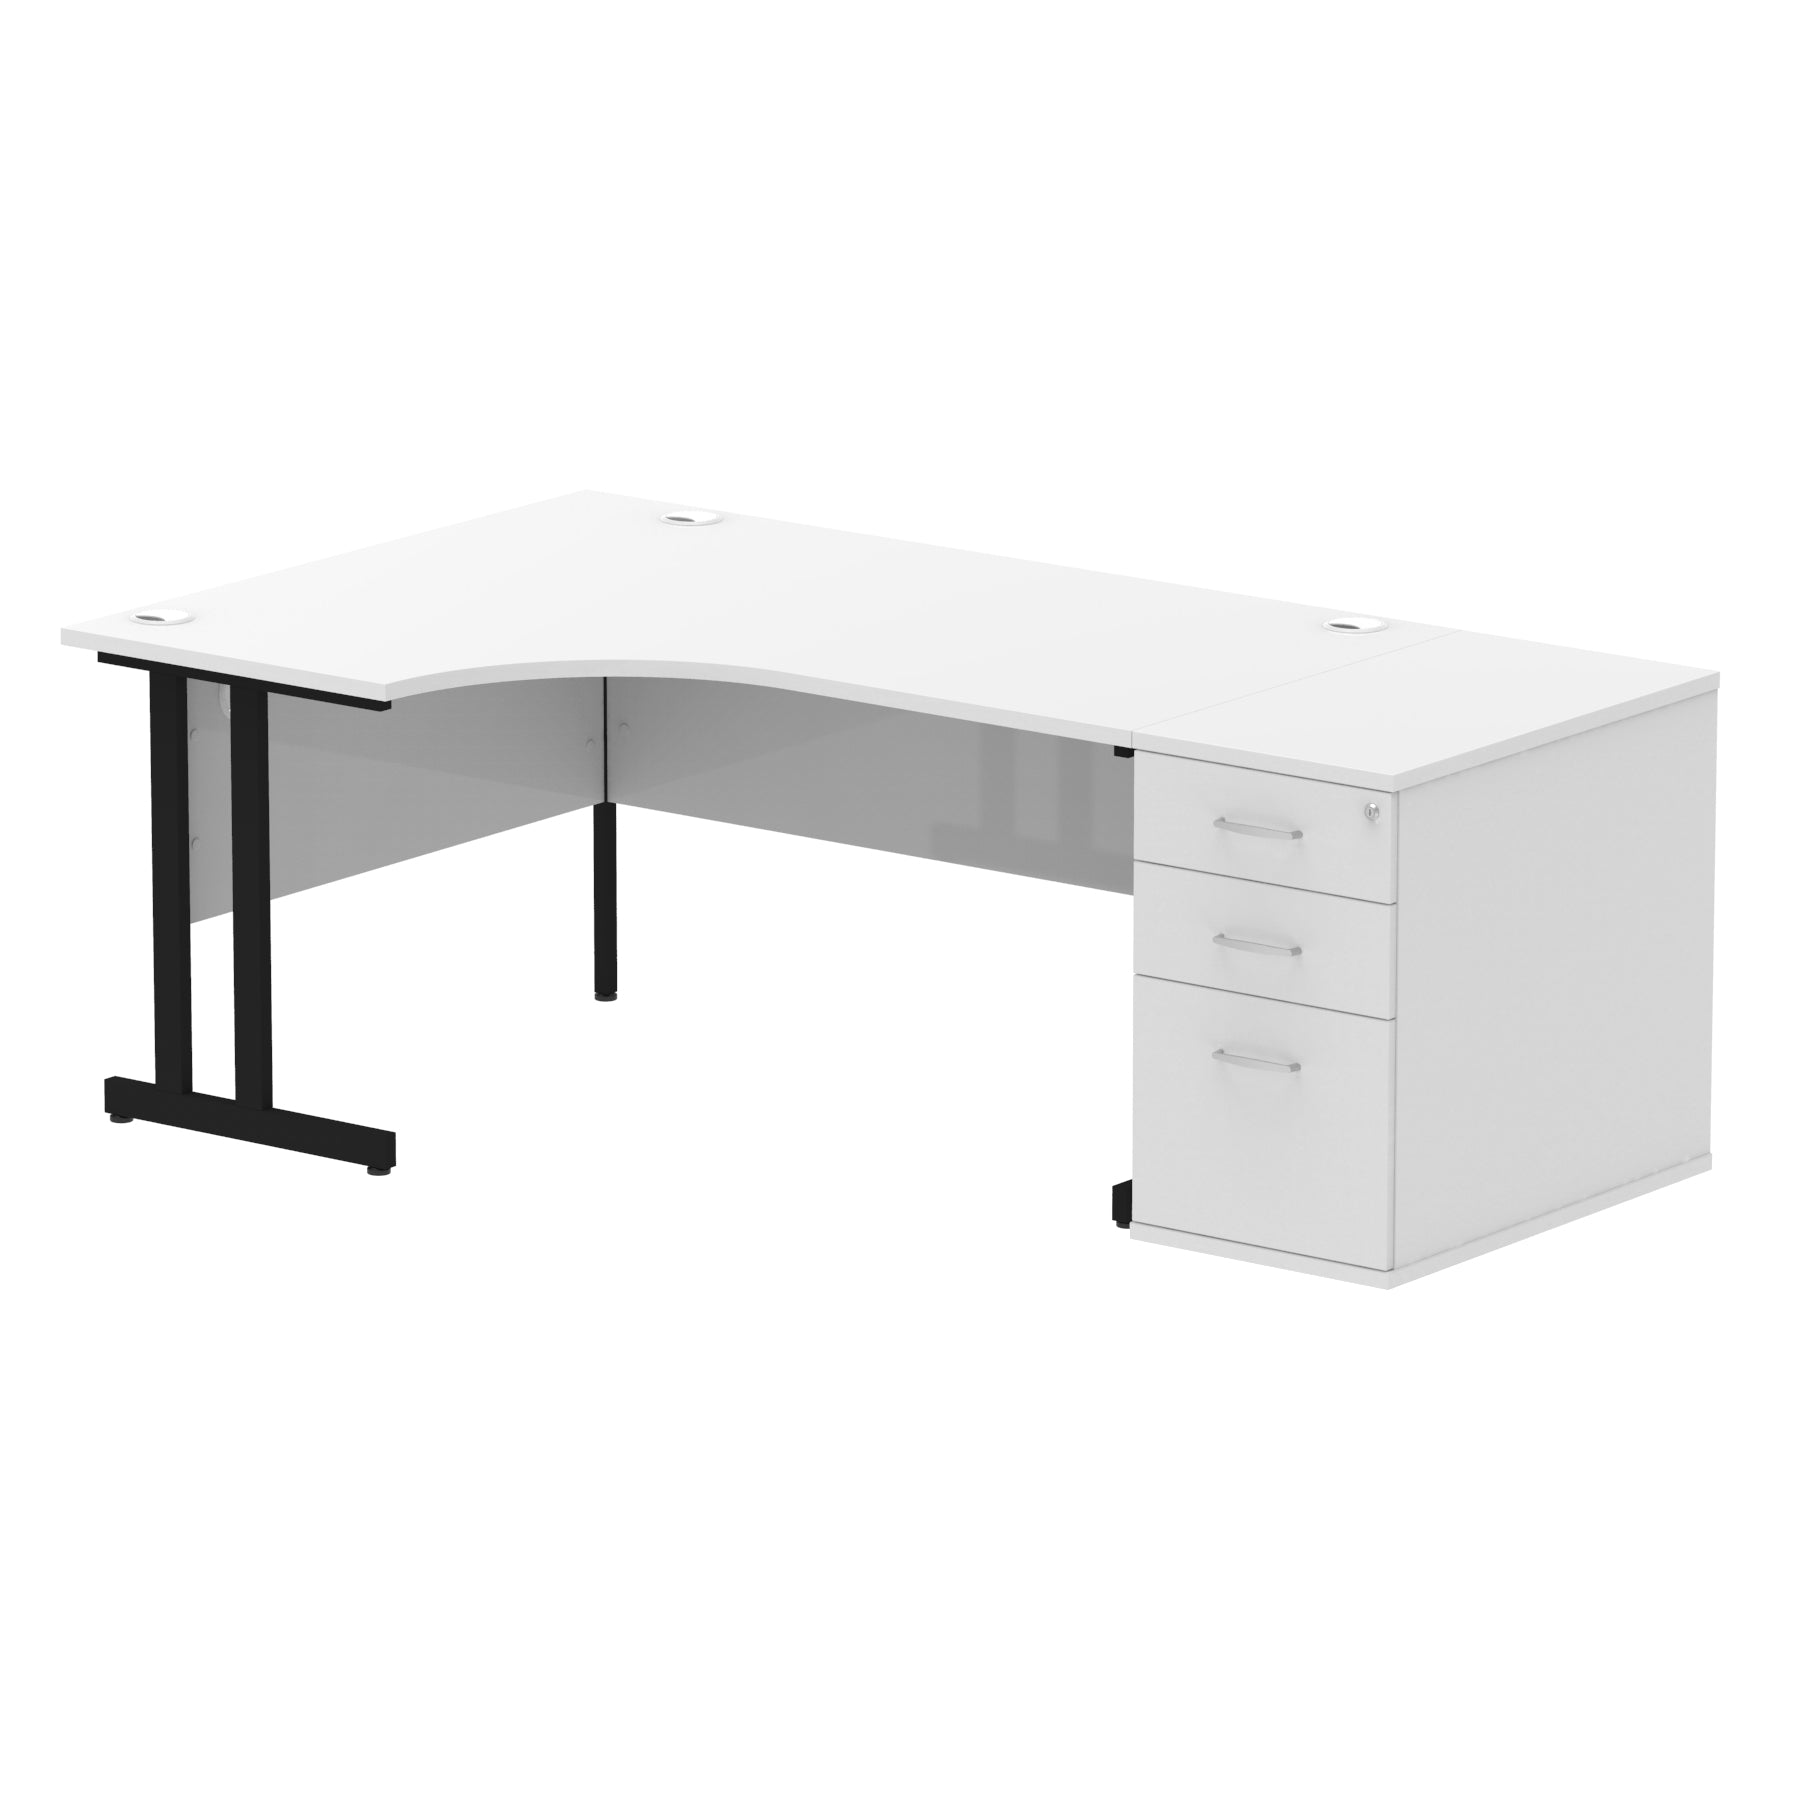 Impulse 1600mm Cantilever Left Crescent Desk Workstation